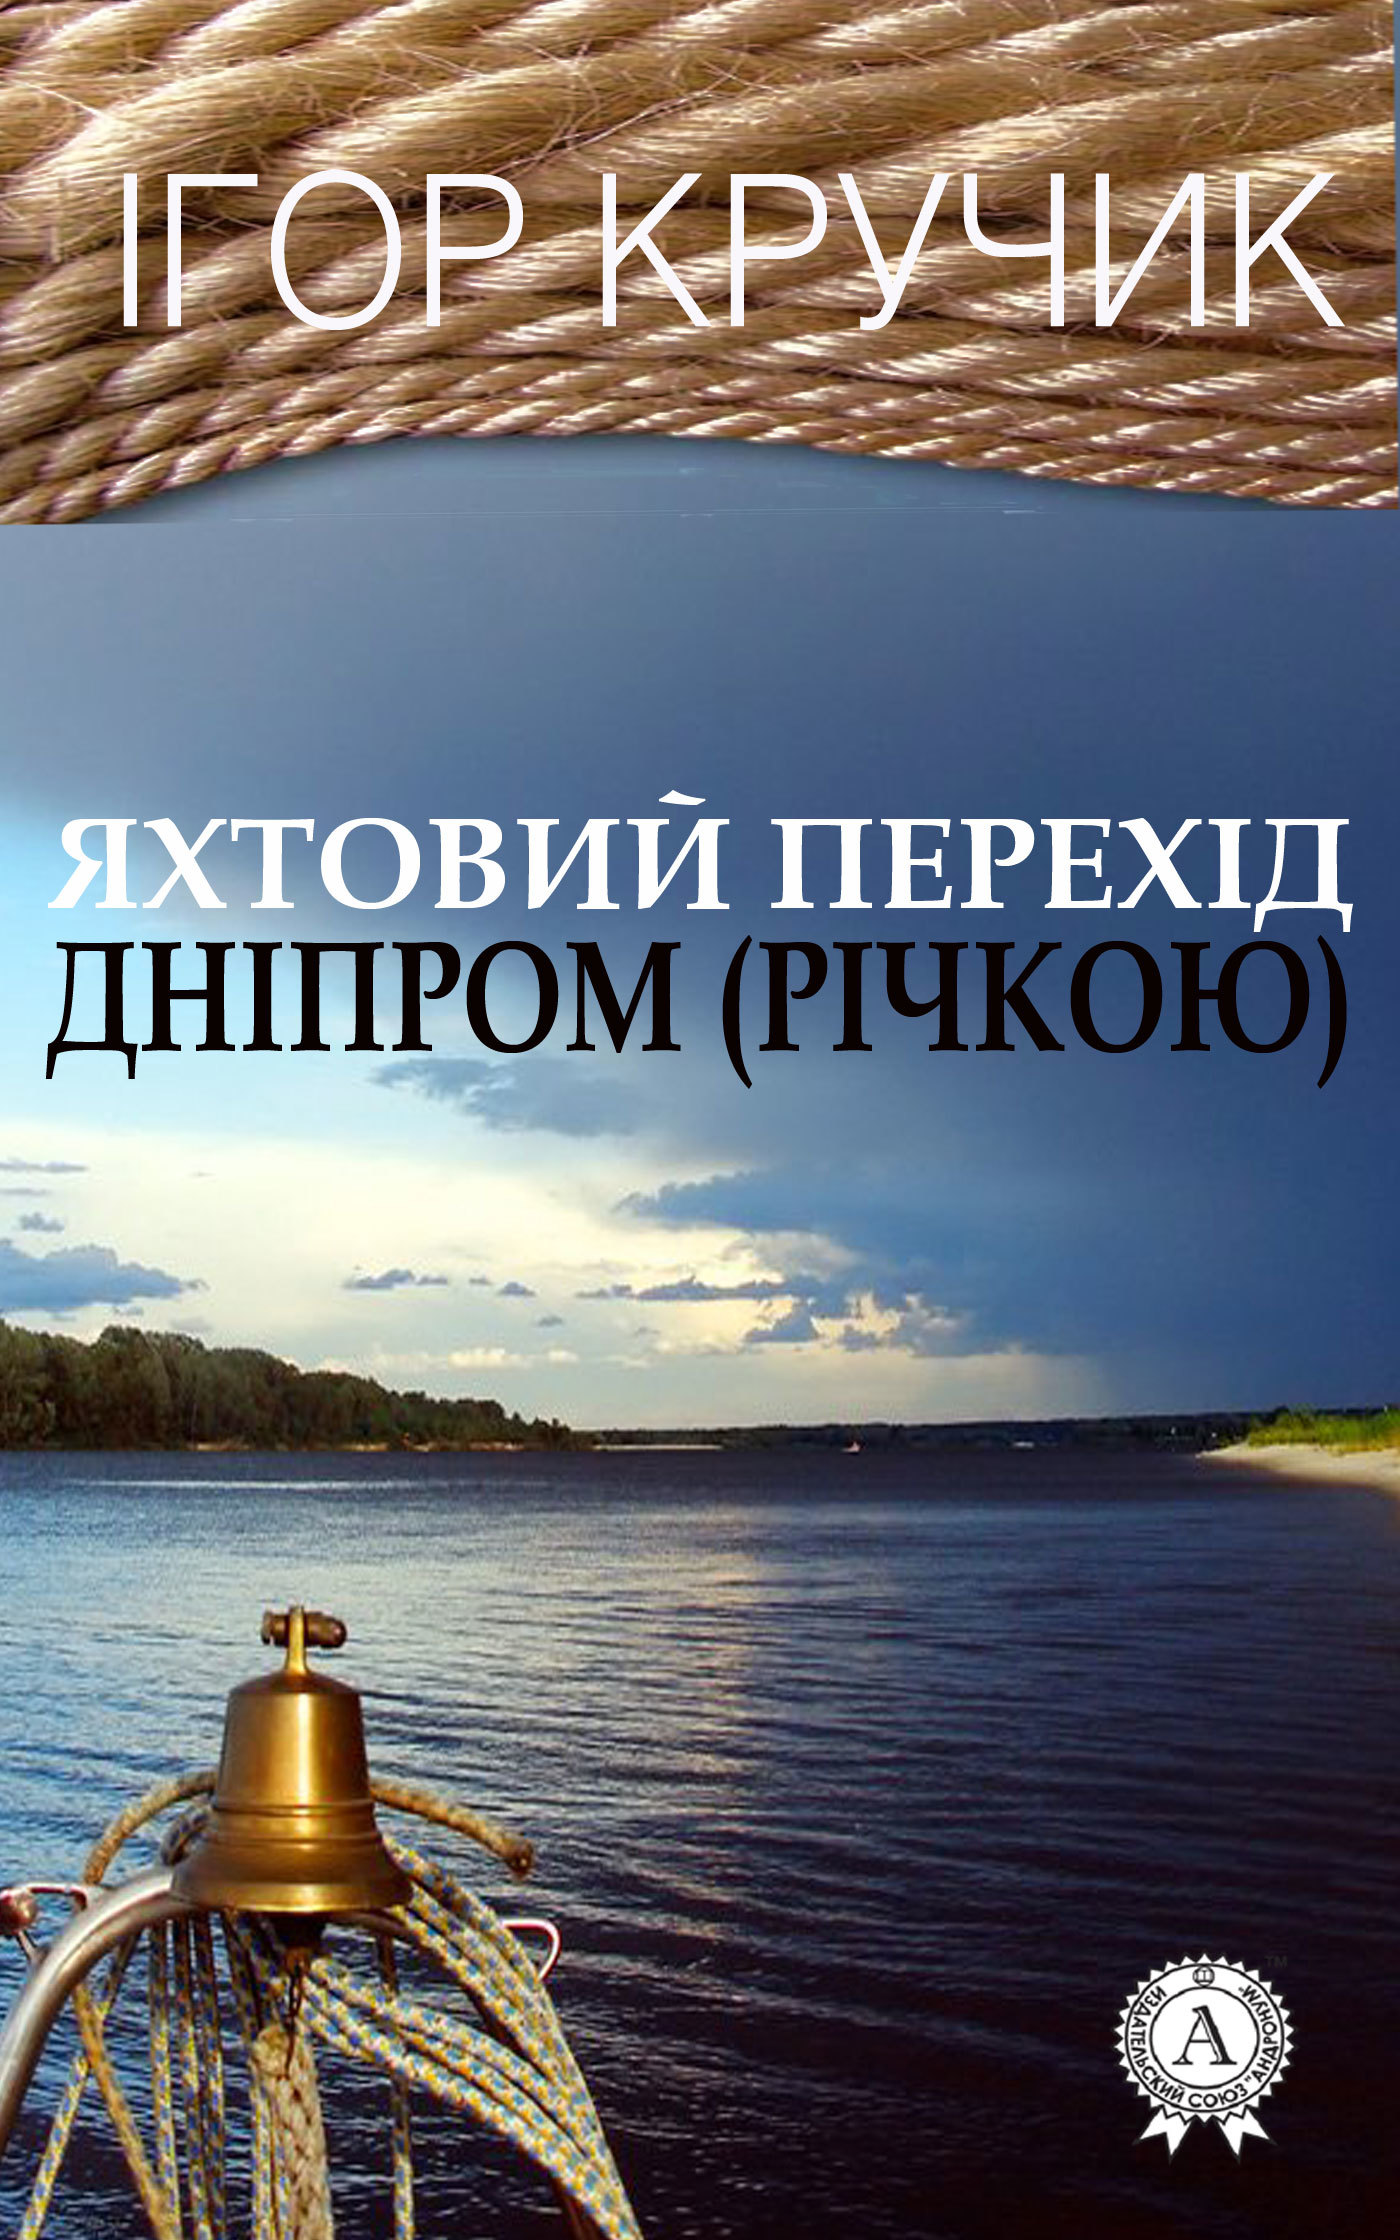 Скачать Яхтовий перехд Днпром (рчкою) быстро